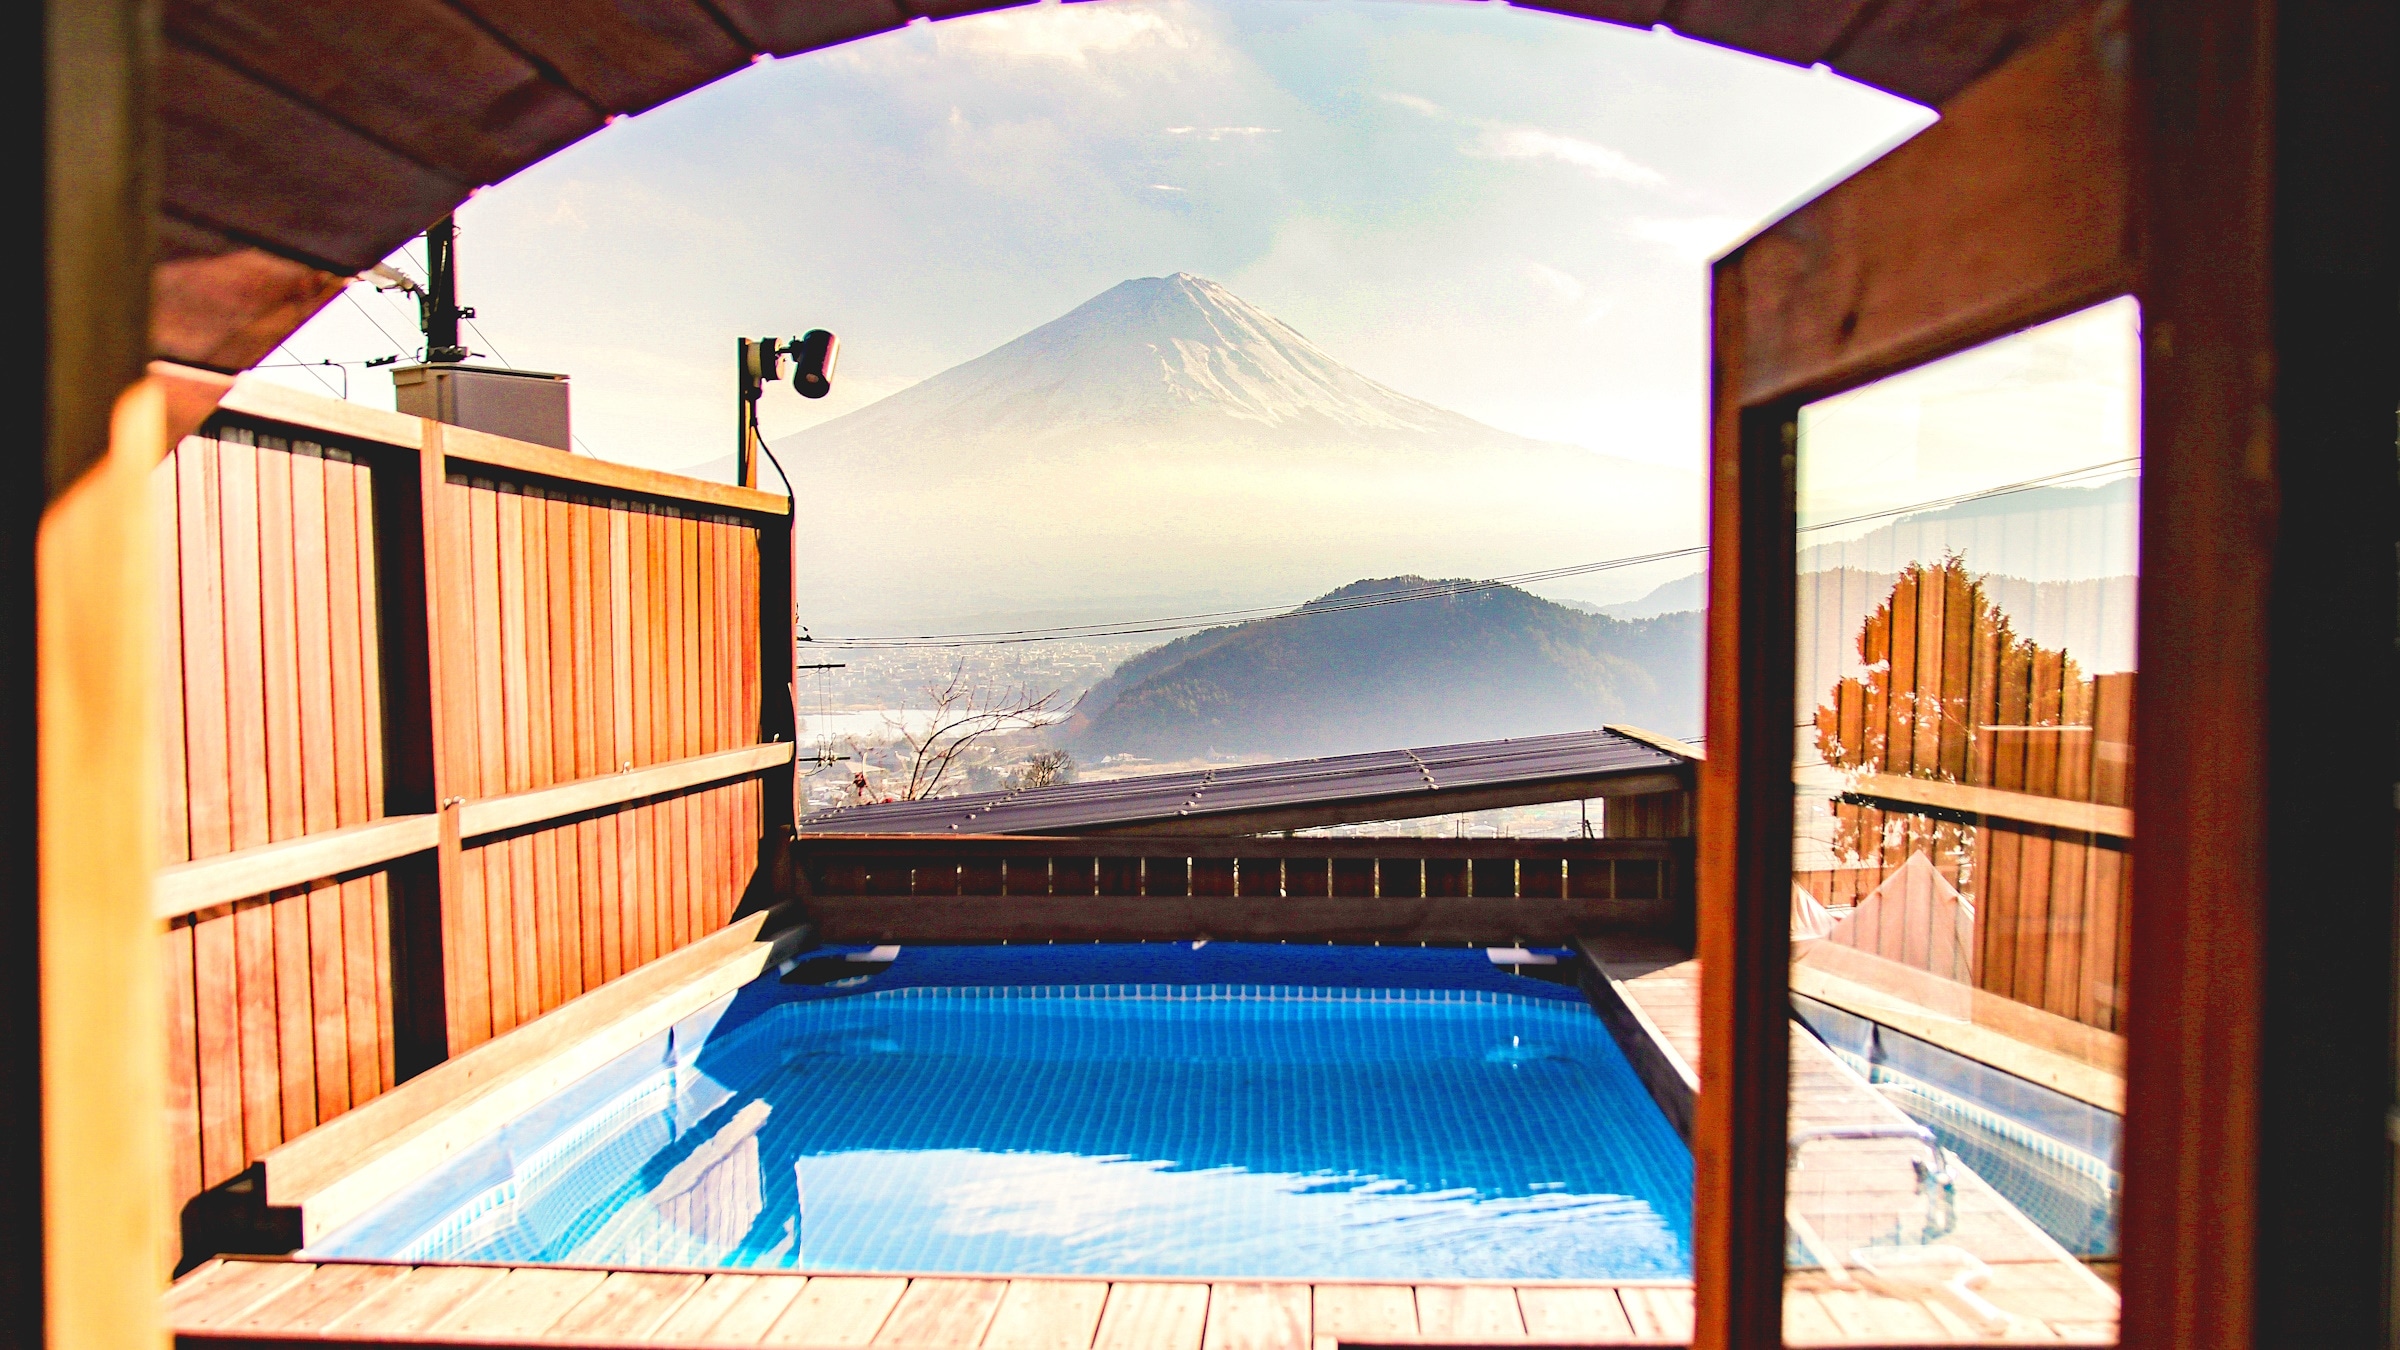 从桑拿房看到的富士山。